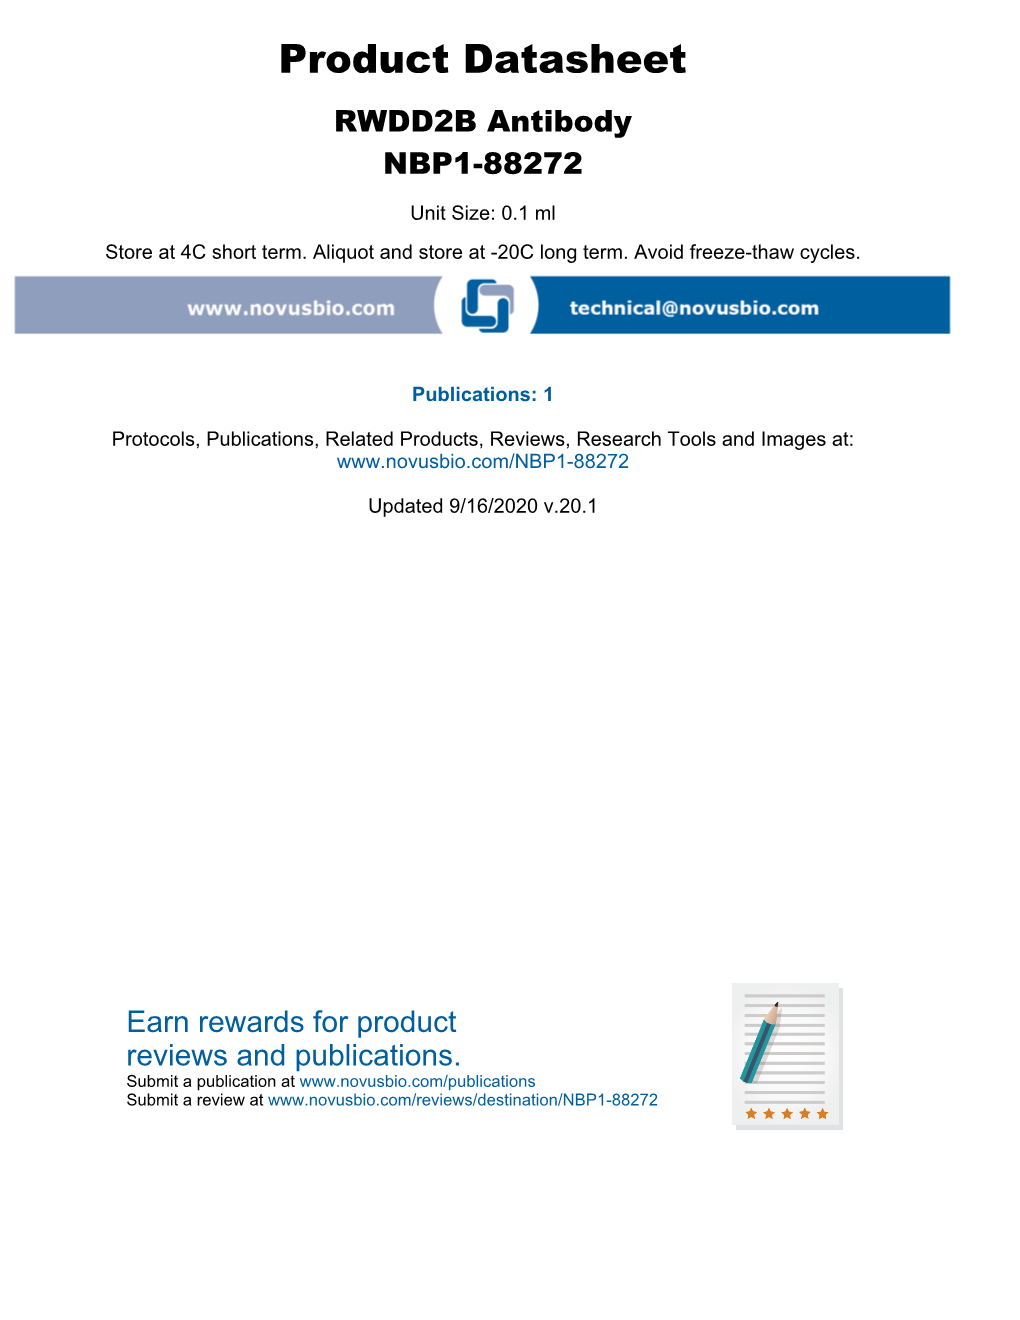 Product Datasheet RWDD2B Antibody NBP1